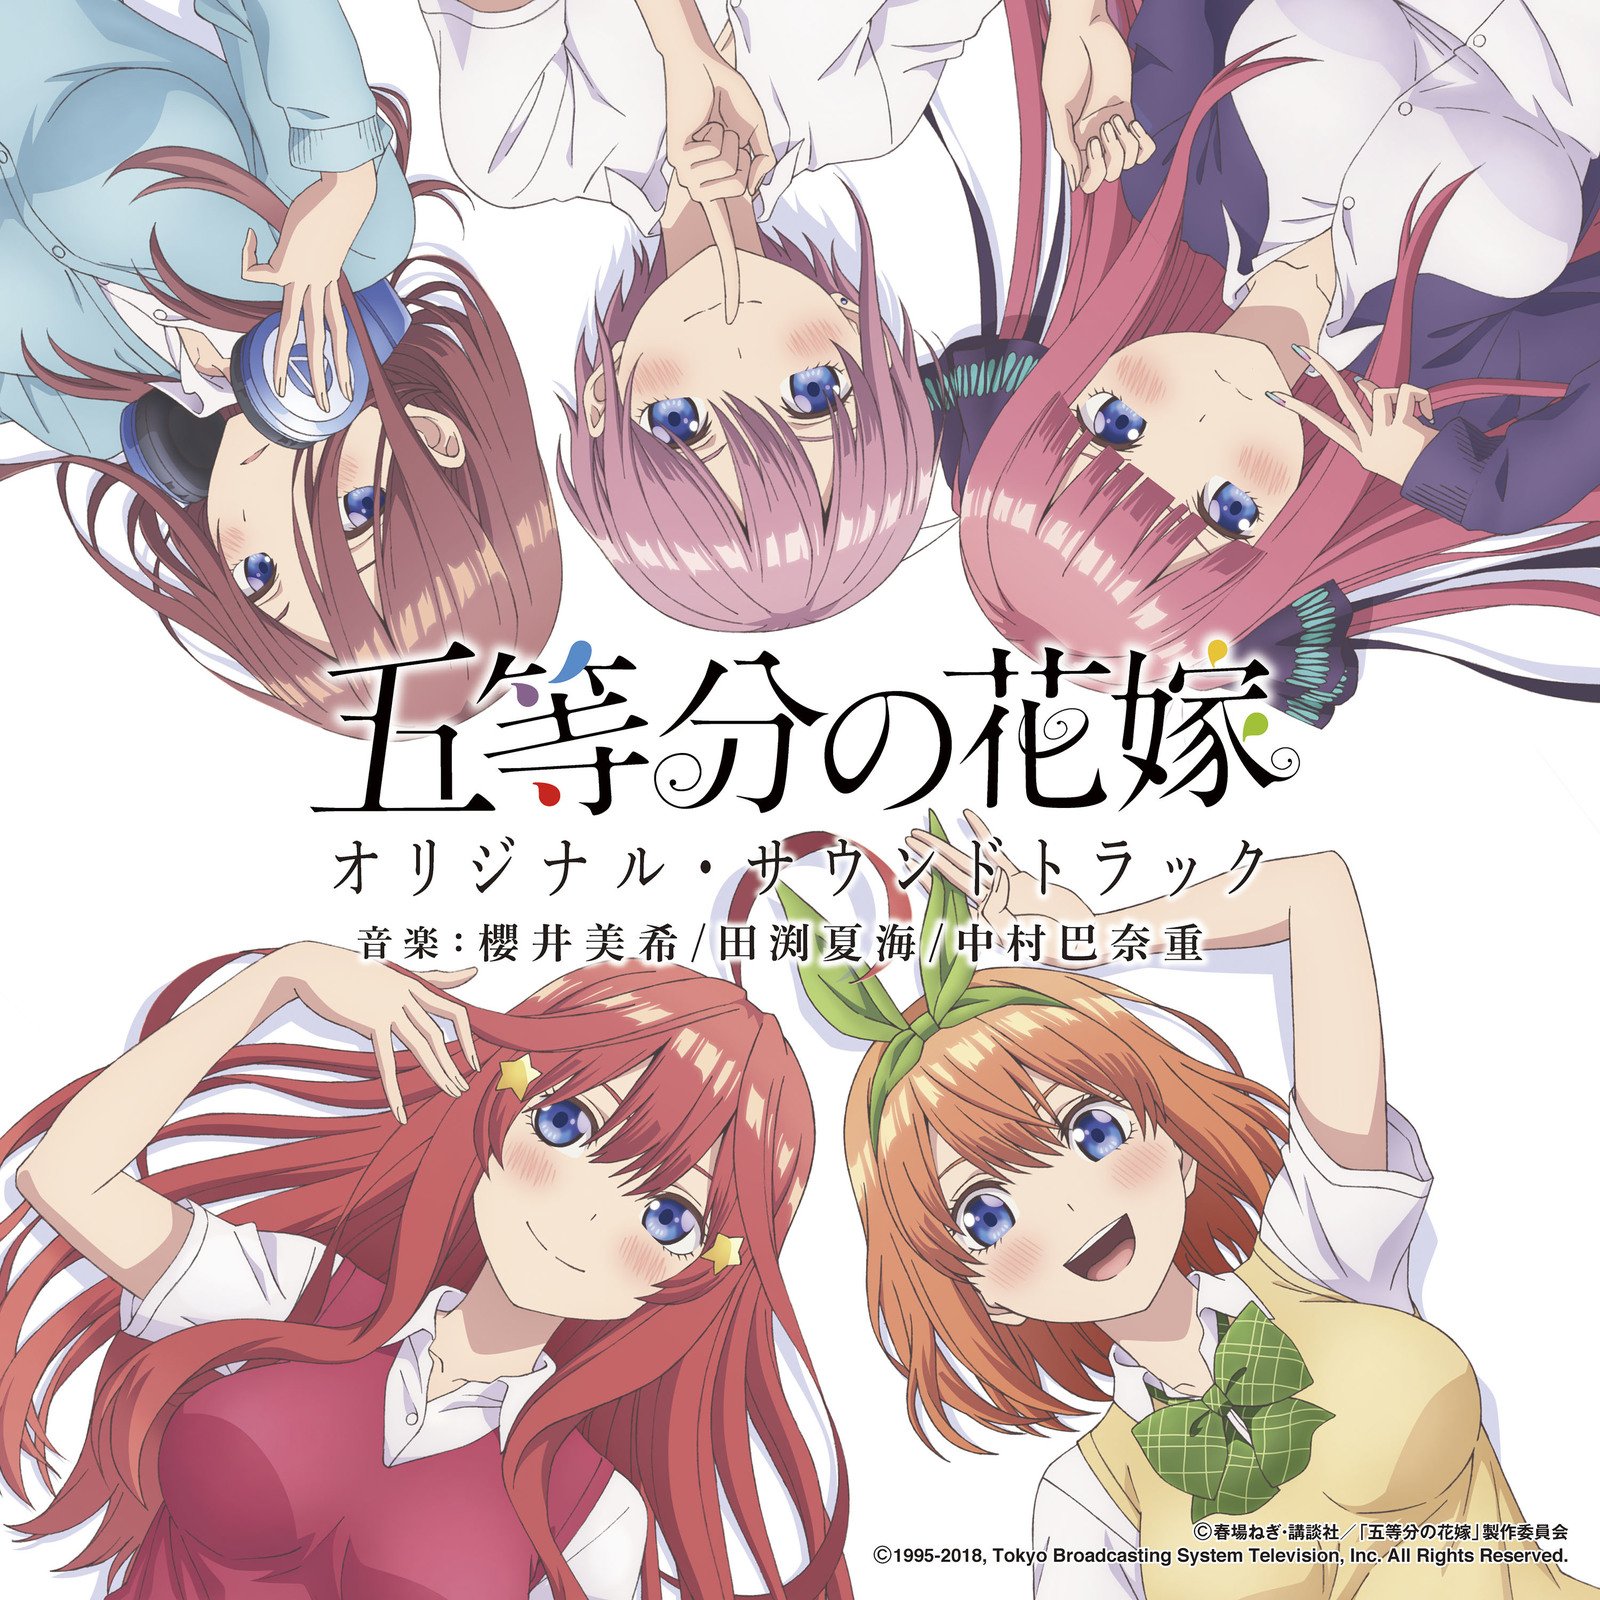 5-toubun no Hanayome Original Soundtrack, 5Toubun no Hanayome Wiki